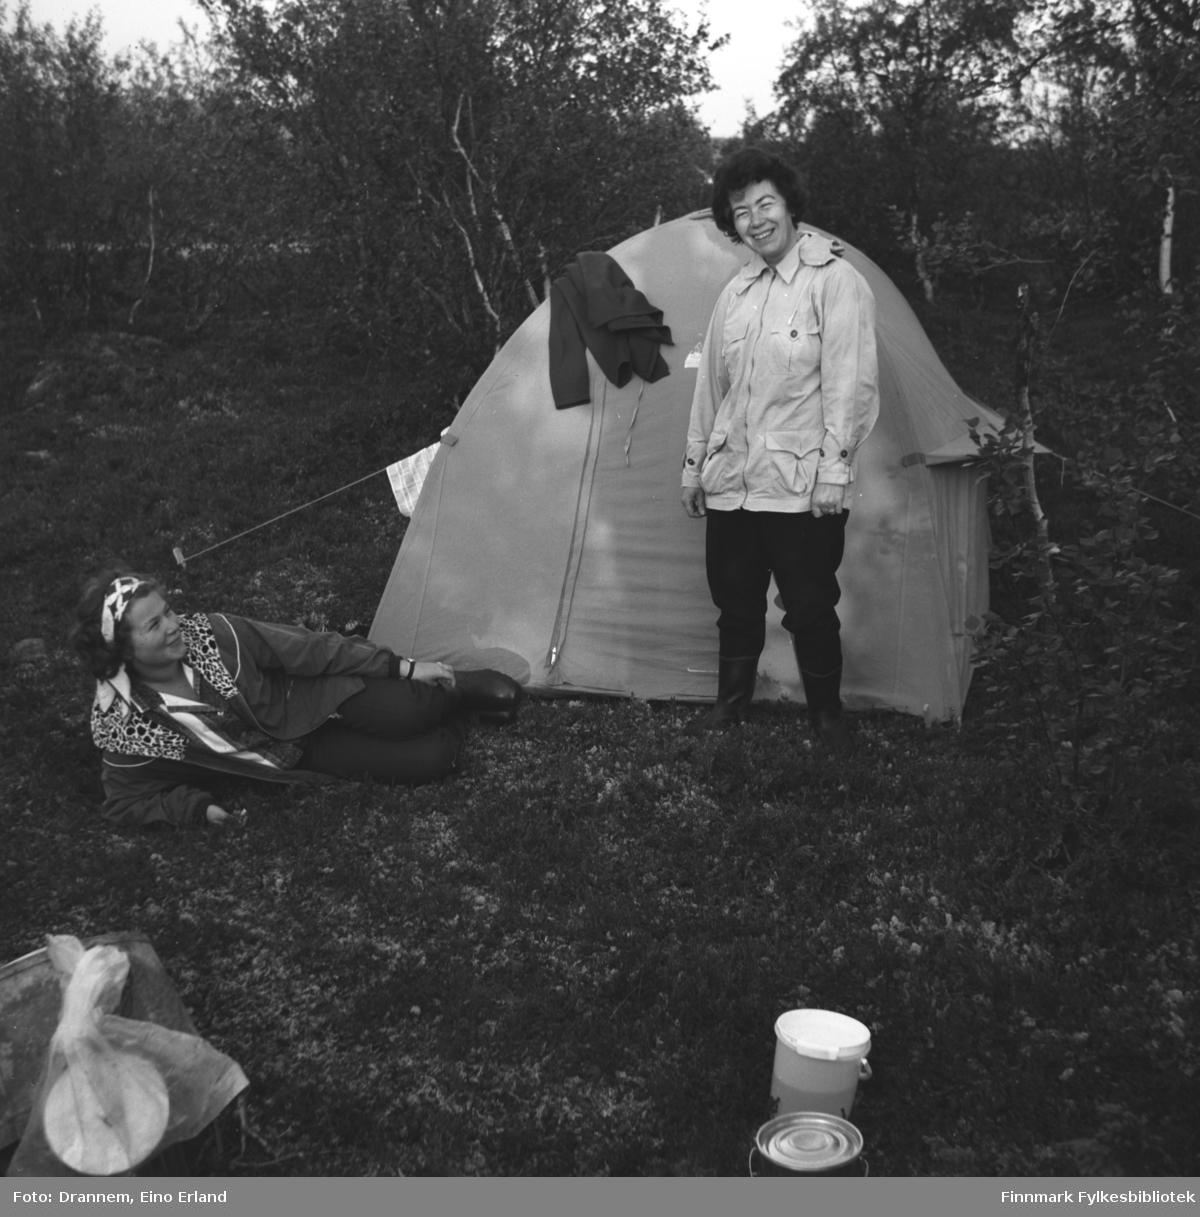 Truid Karikoski og Jenny Drannem på telttur. Stedet er ukjent, men kan være Neiden.